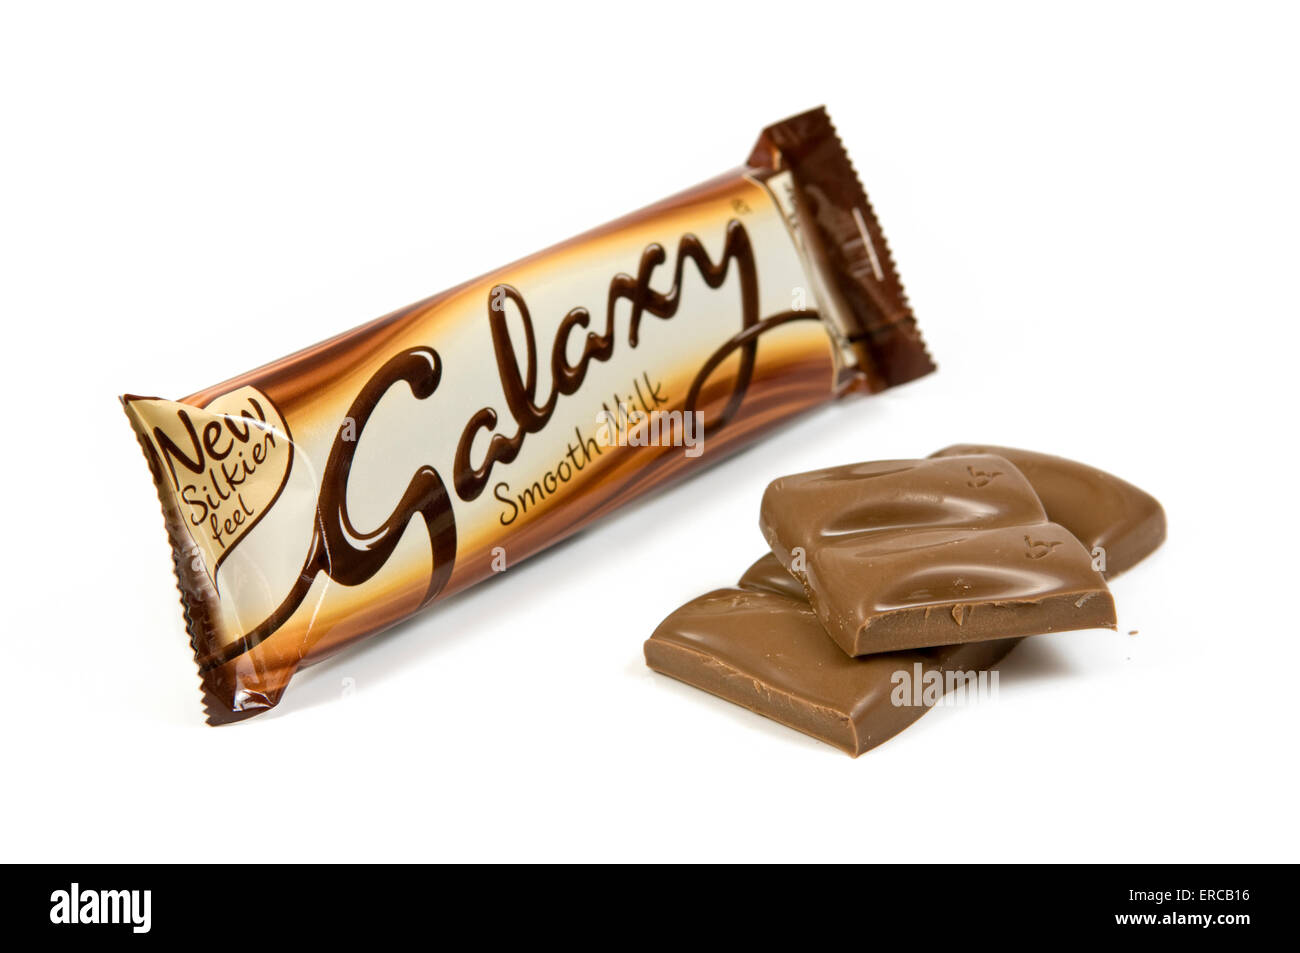 Galaxy glatt Milchschokolade Balken auf weißem Hintergrund mit offenen Balken an der Seite Stockfoto